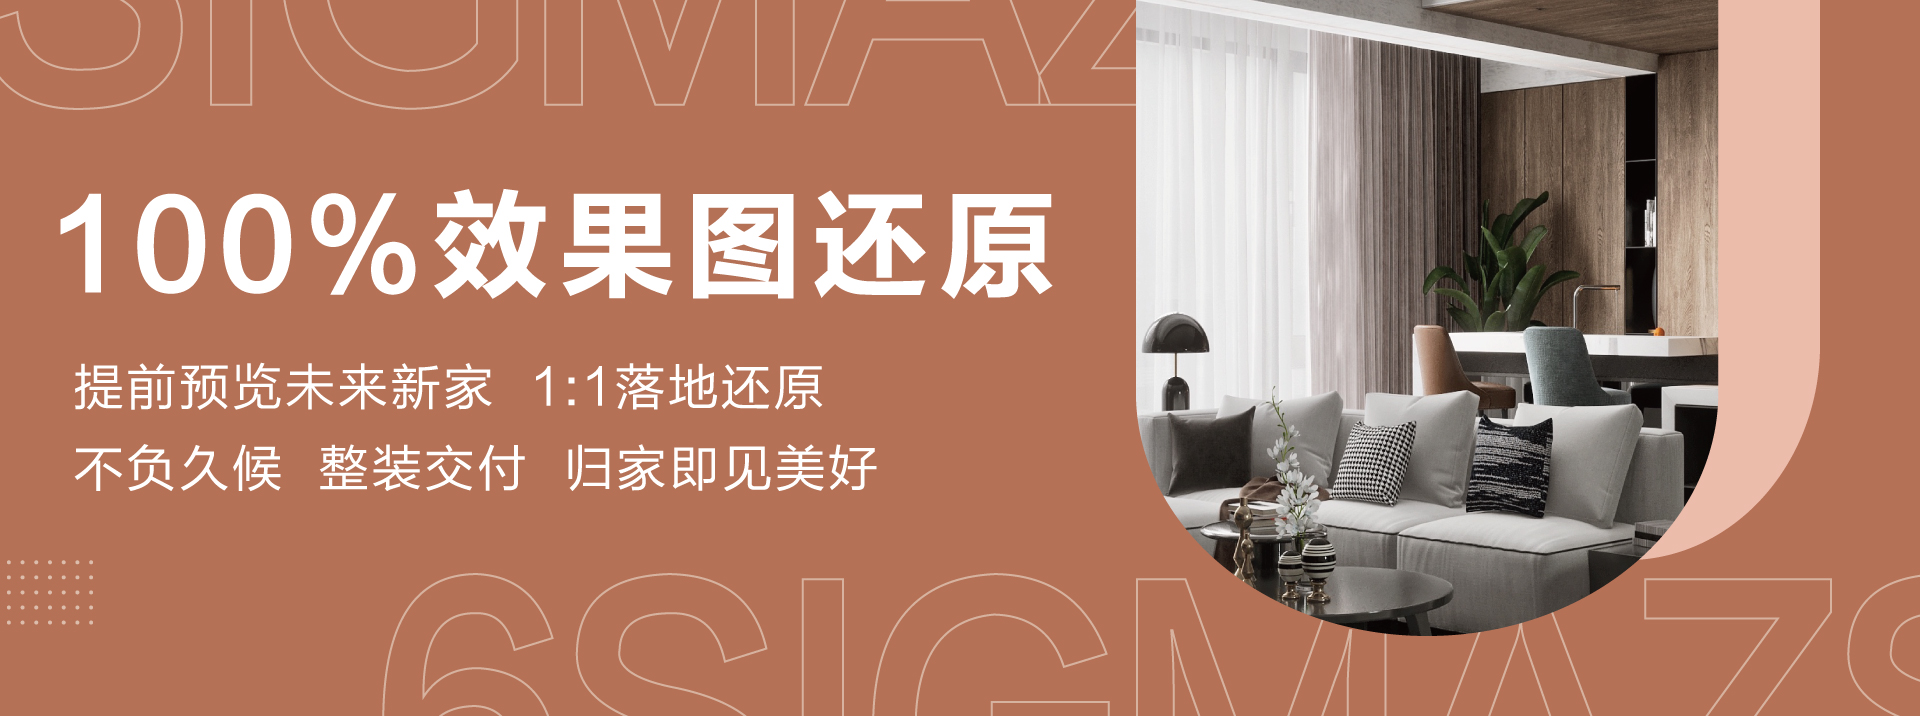 丰满的媳妇中文字六西格玛装饰活动海报